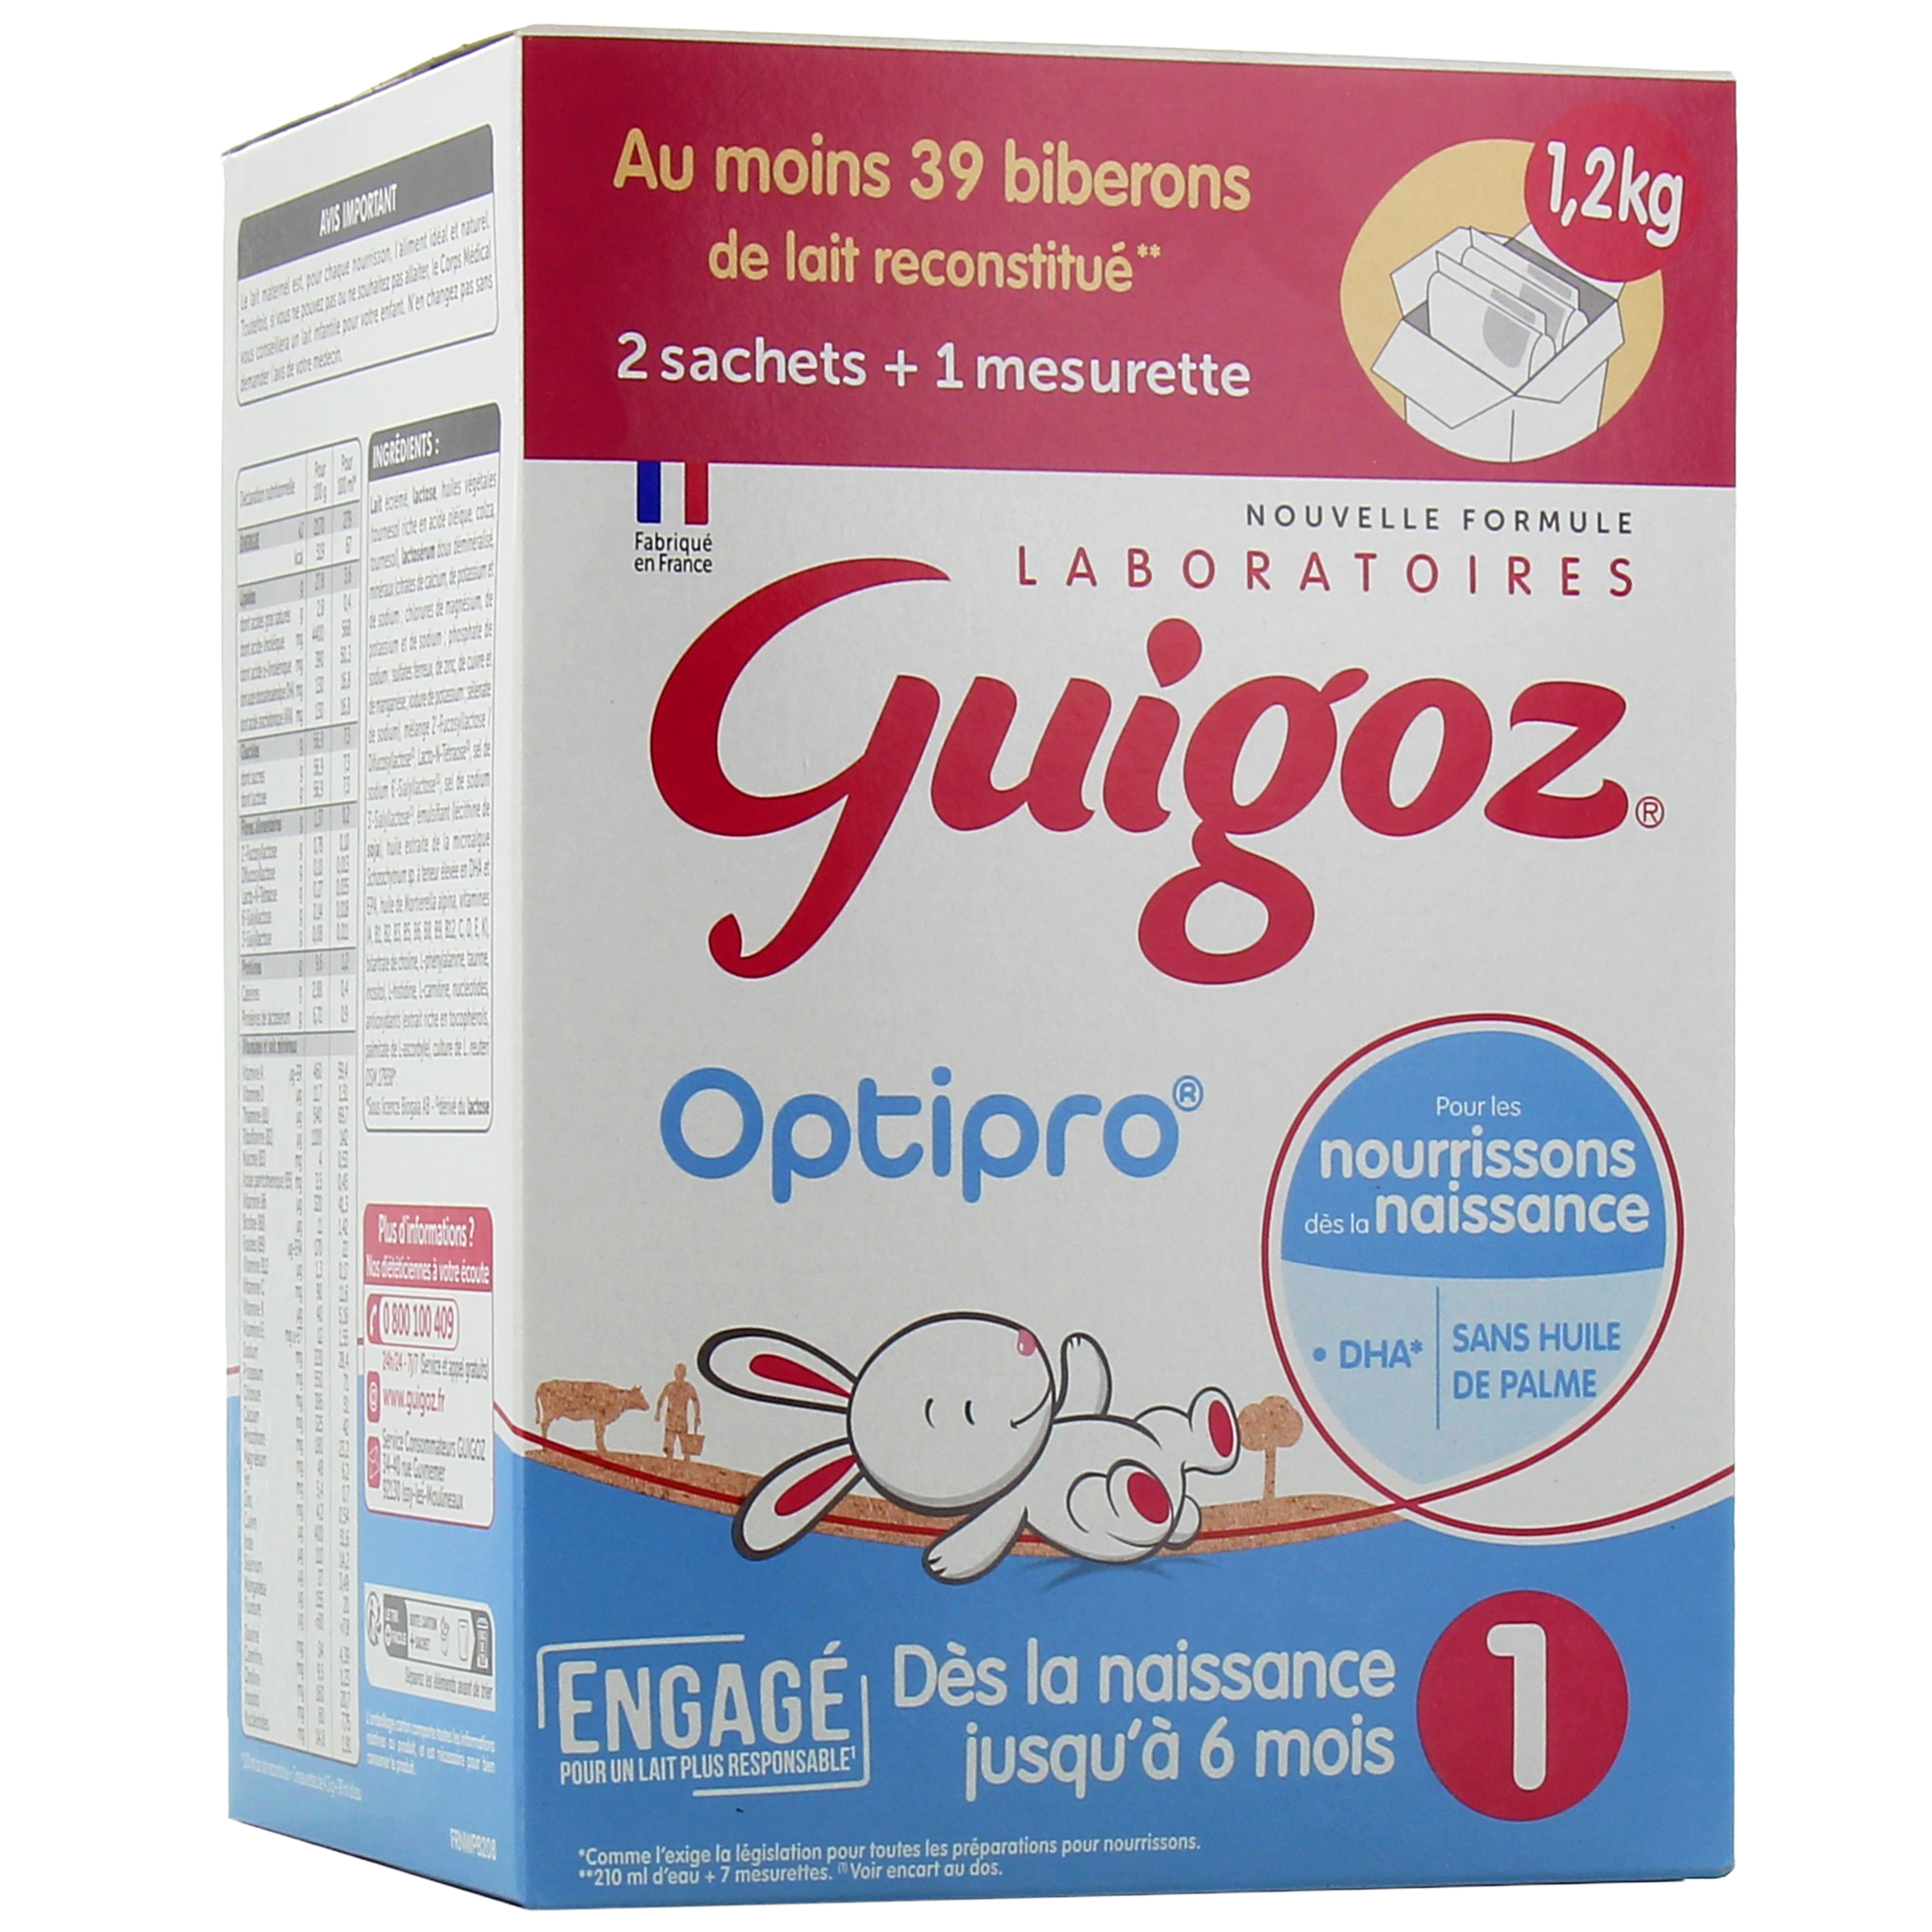 Guigoz 1 Lait en Poudre 0-6 mois, boite de 800g - La Pharmacie de